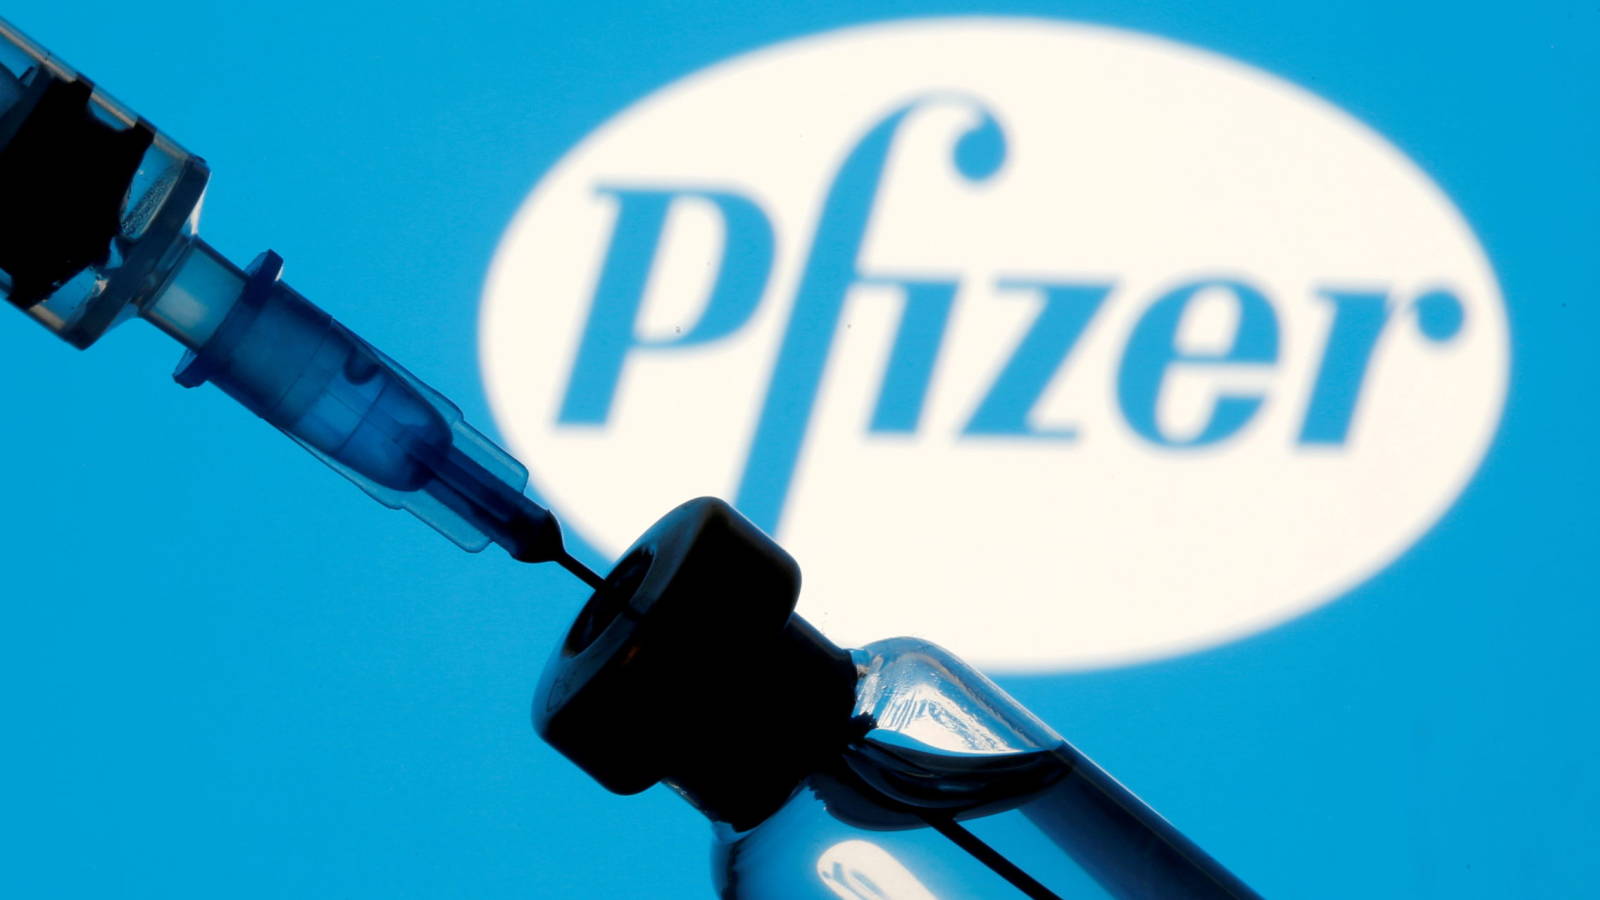 1 millón de dosis de la Pfizer serán adquiridas por el Gobierno, anunció Salud.